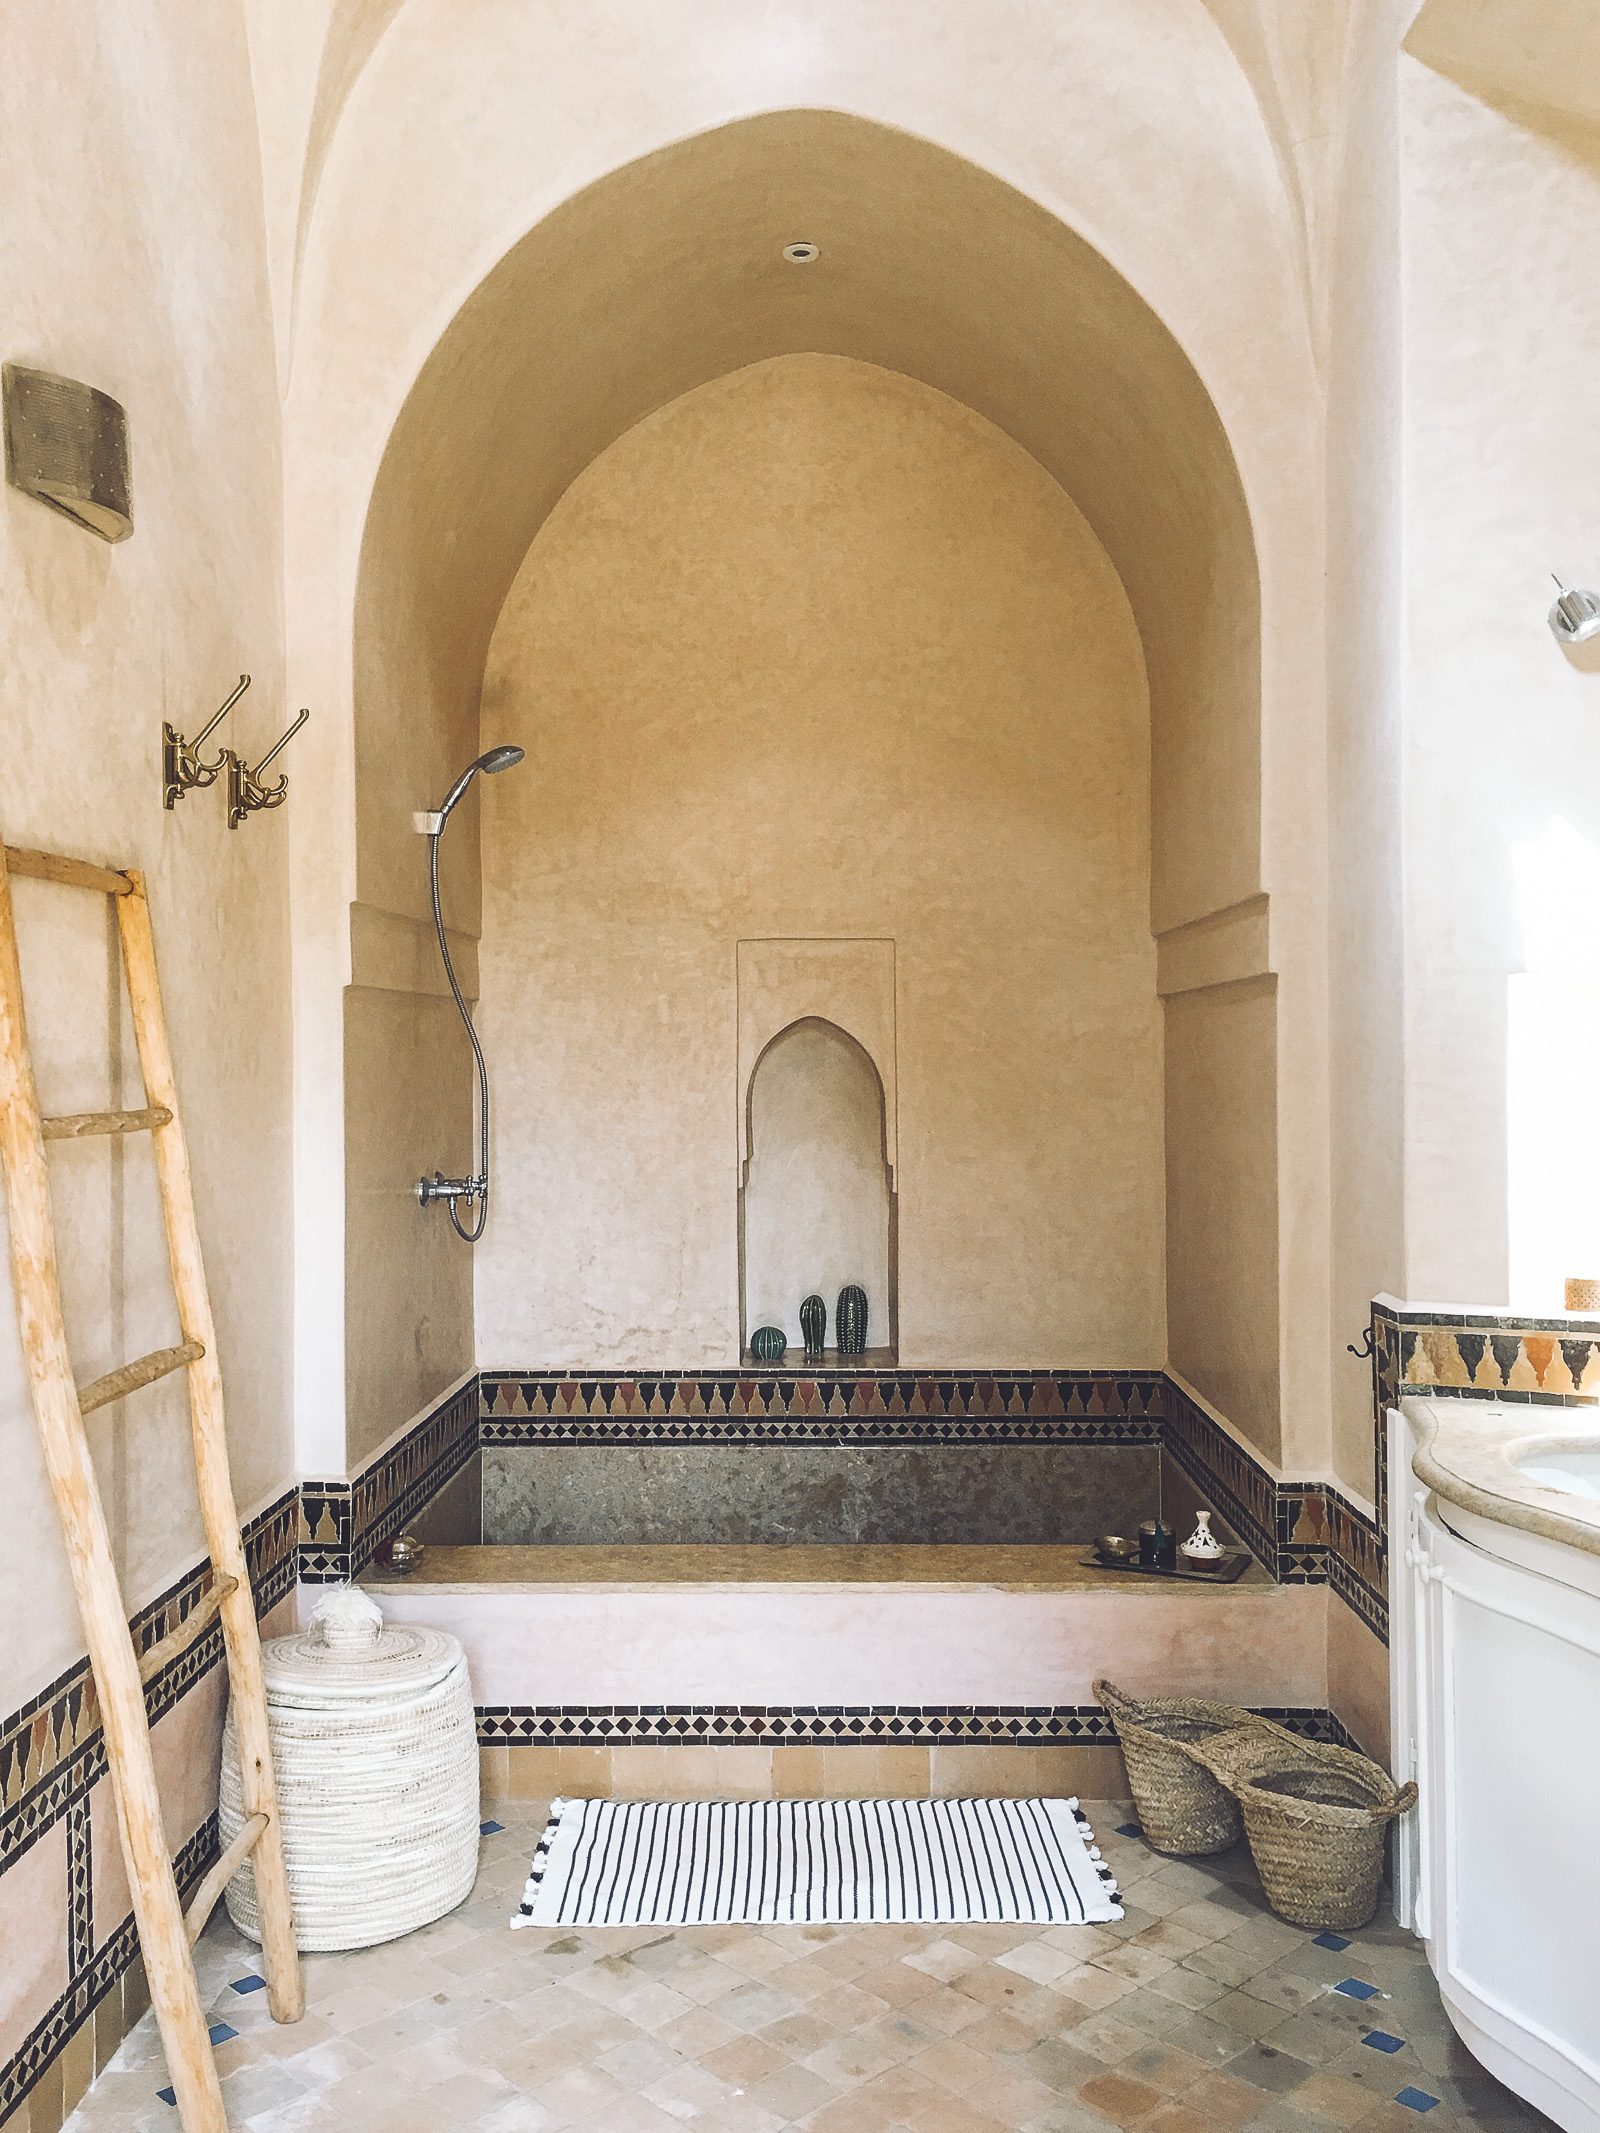 Location Maison Marrakech Salle de bains